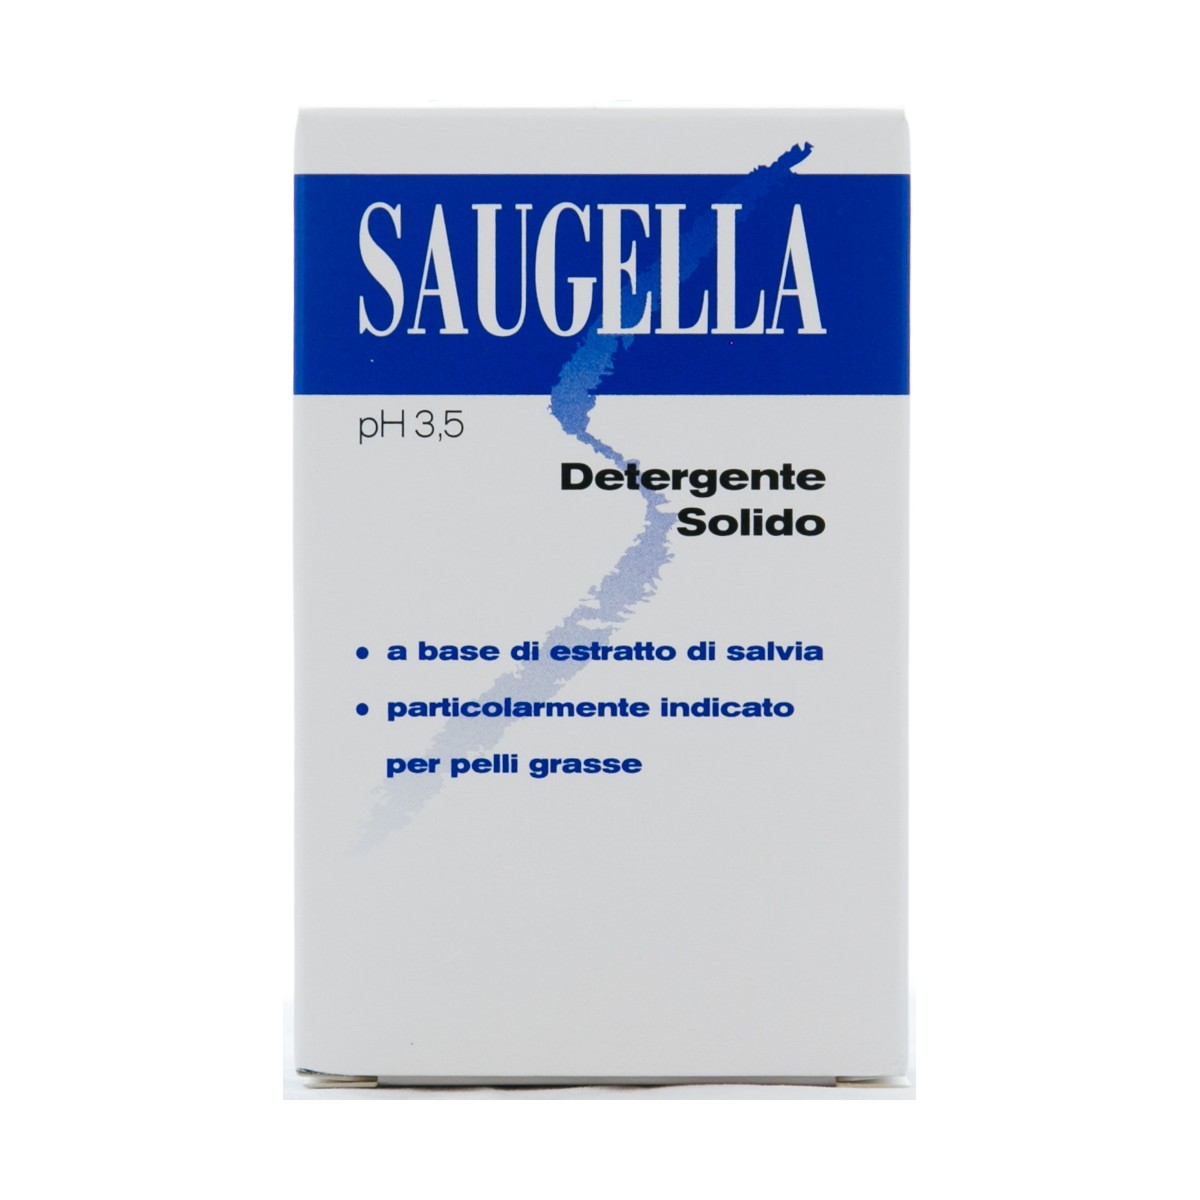 SAUGELLA SAUGELLA DETERGENTE SOLIDO ALL'ESTRATTO DI SALVIA PER PELLI GRASSE PH 3,5 100g